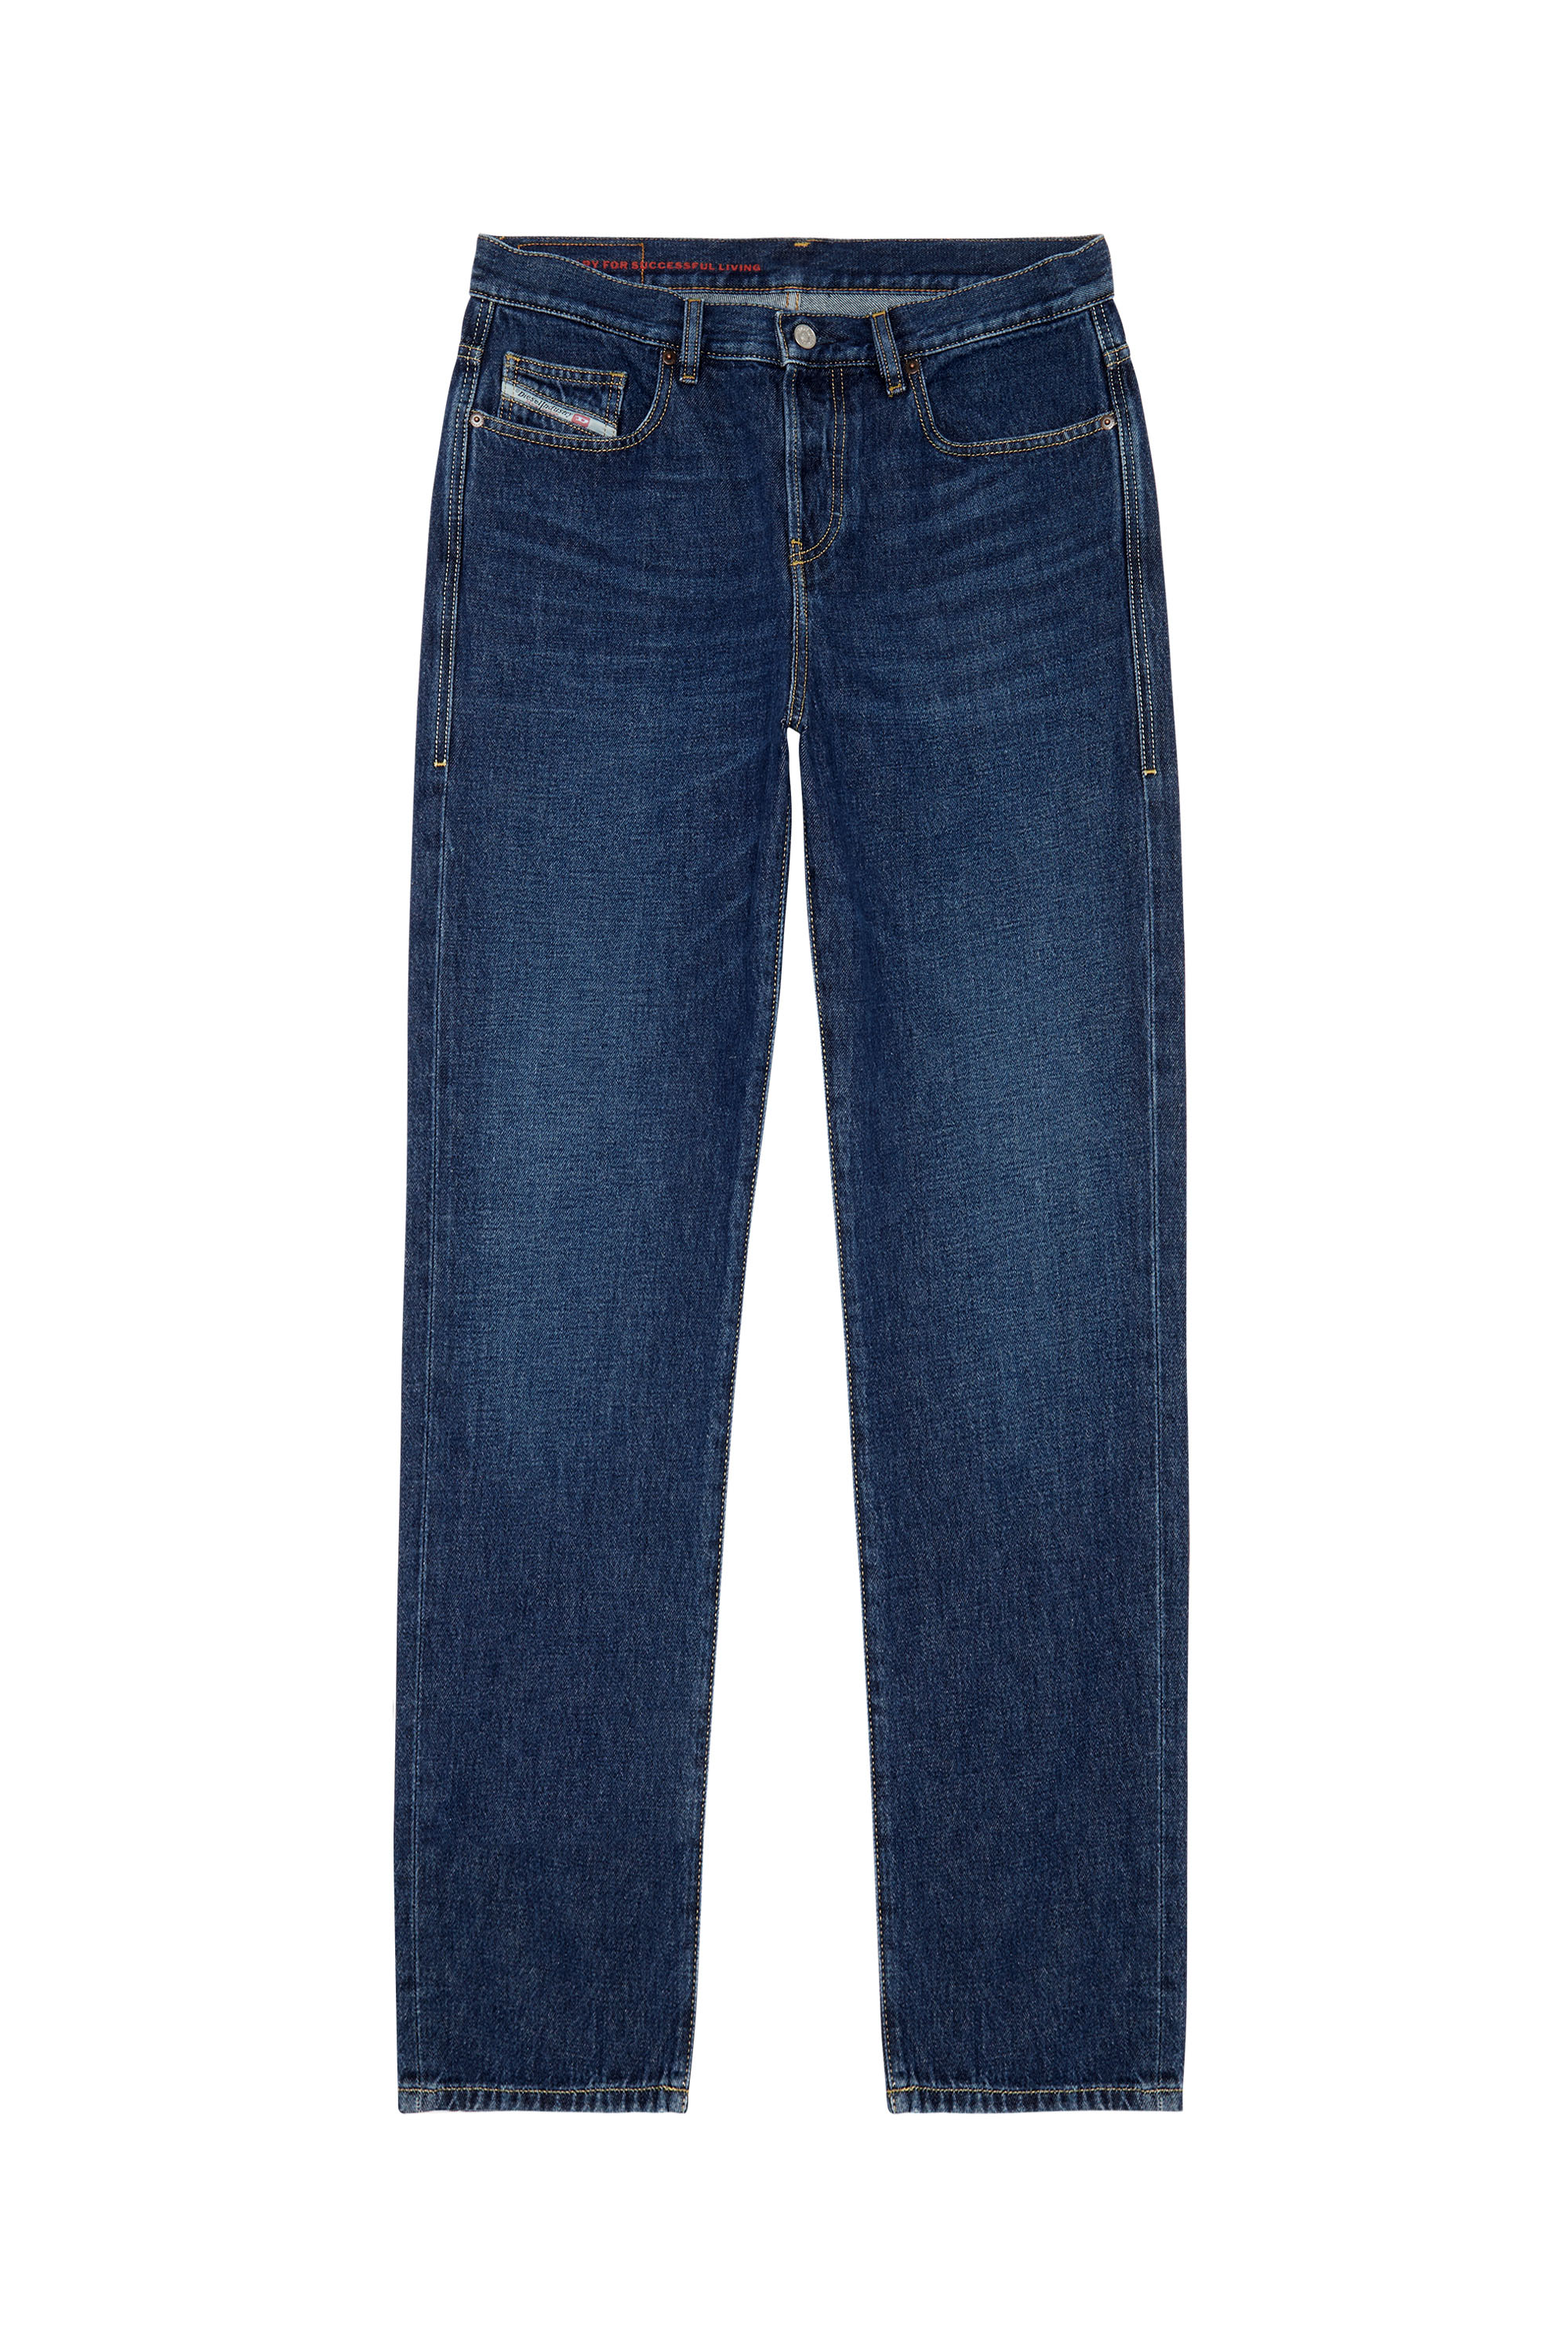 2020 D-Viker 09C03 Straight Jeans, Dunkelblau - Jeans